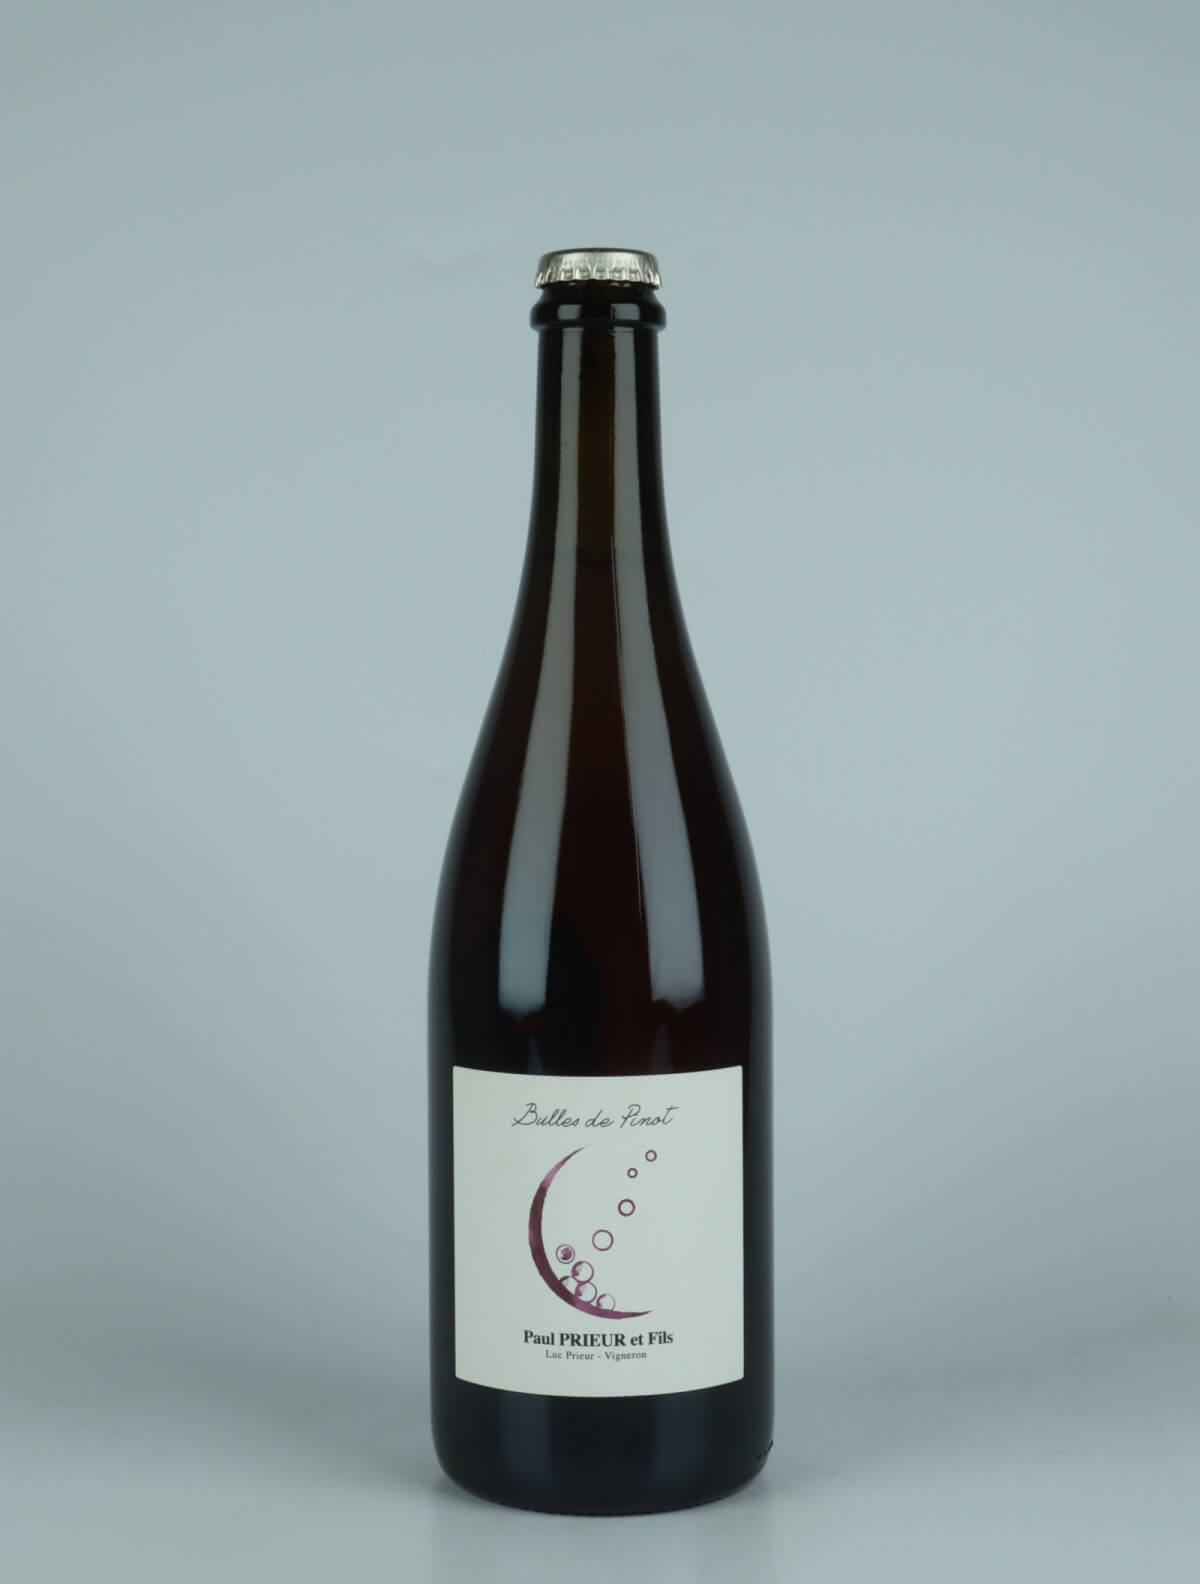 A bottle 2022 Bulles de Pinot Sparkling from Paul Prieur et Fils, Loire in France